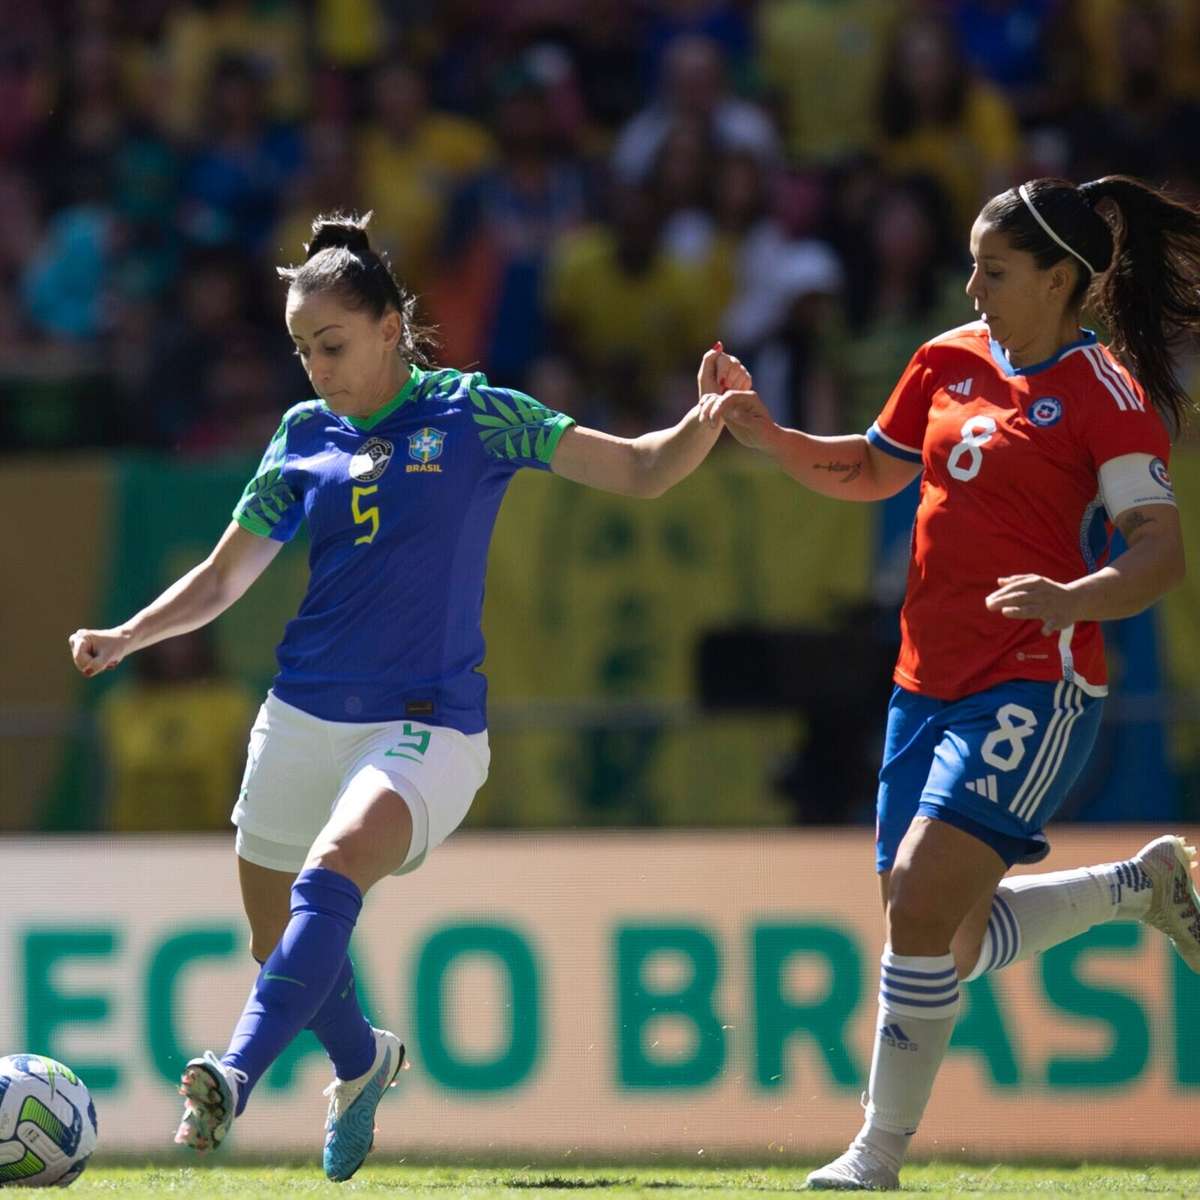 GRUPO F, do Brasil na Copa do Mundo Feminina 2023: tabela, classificação,  datas e horários dos jogos - Lance!